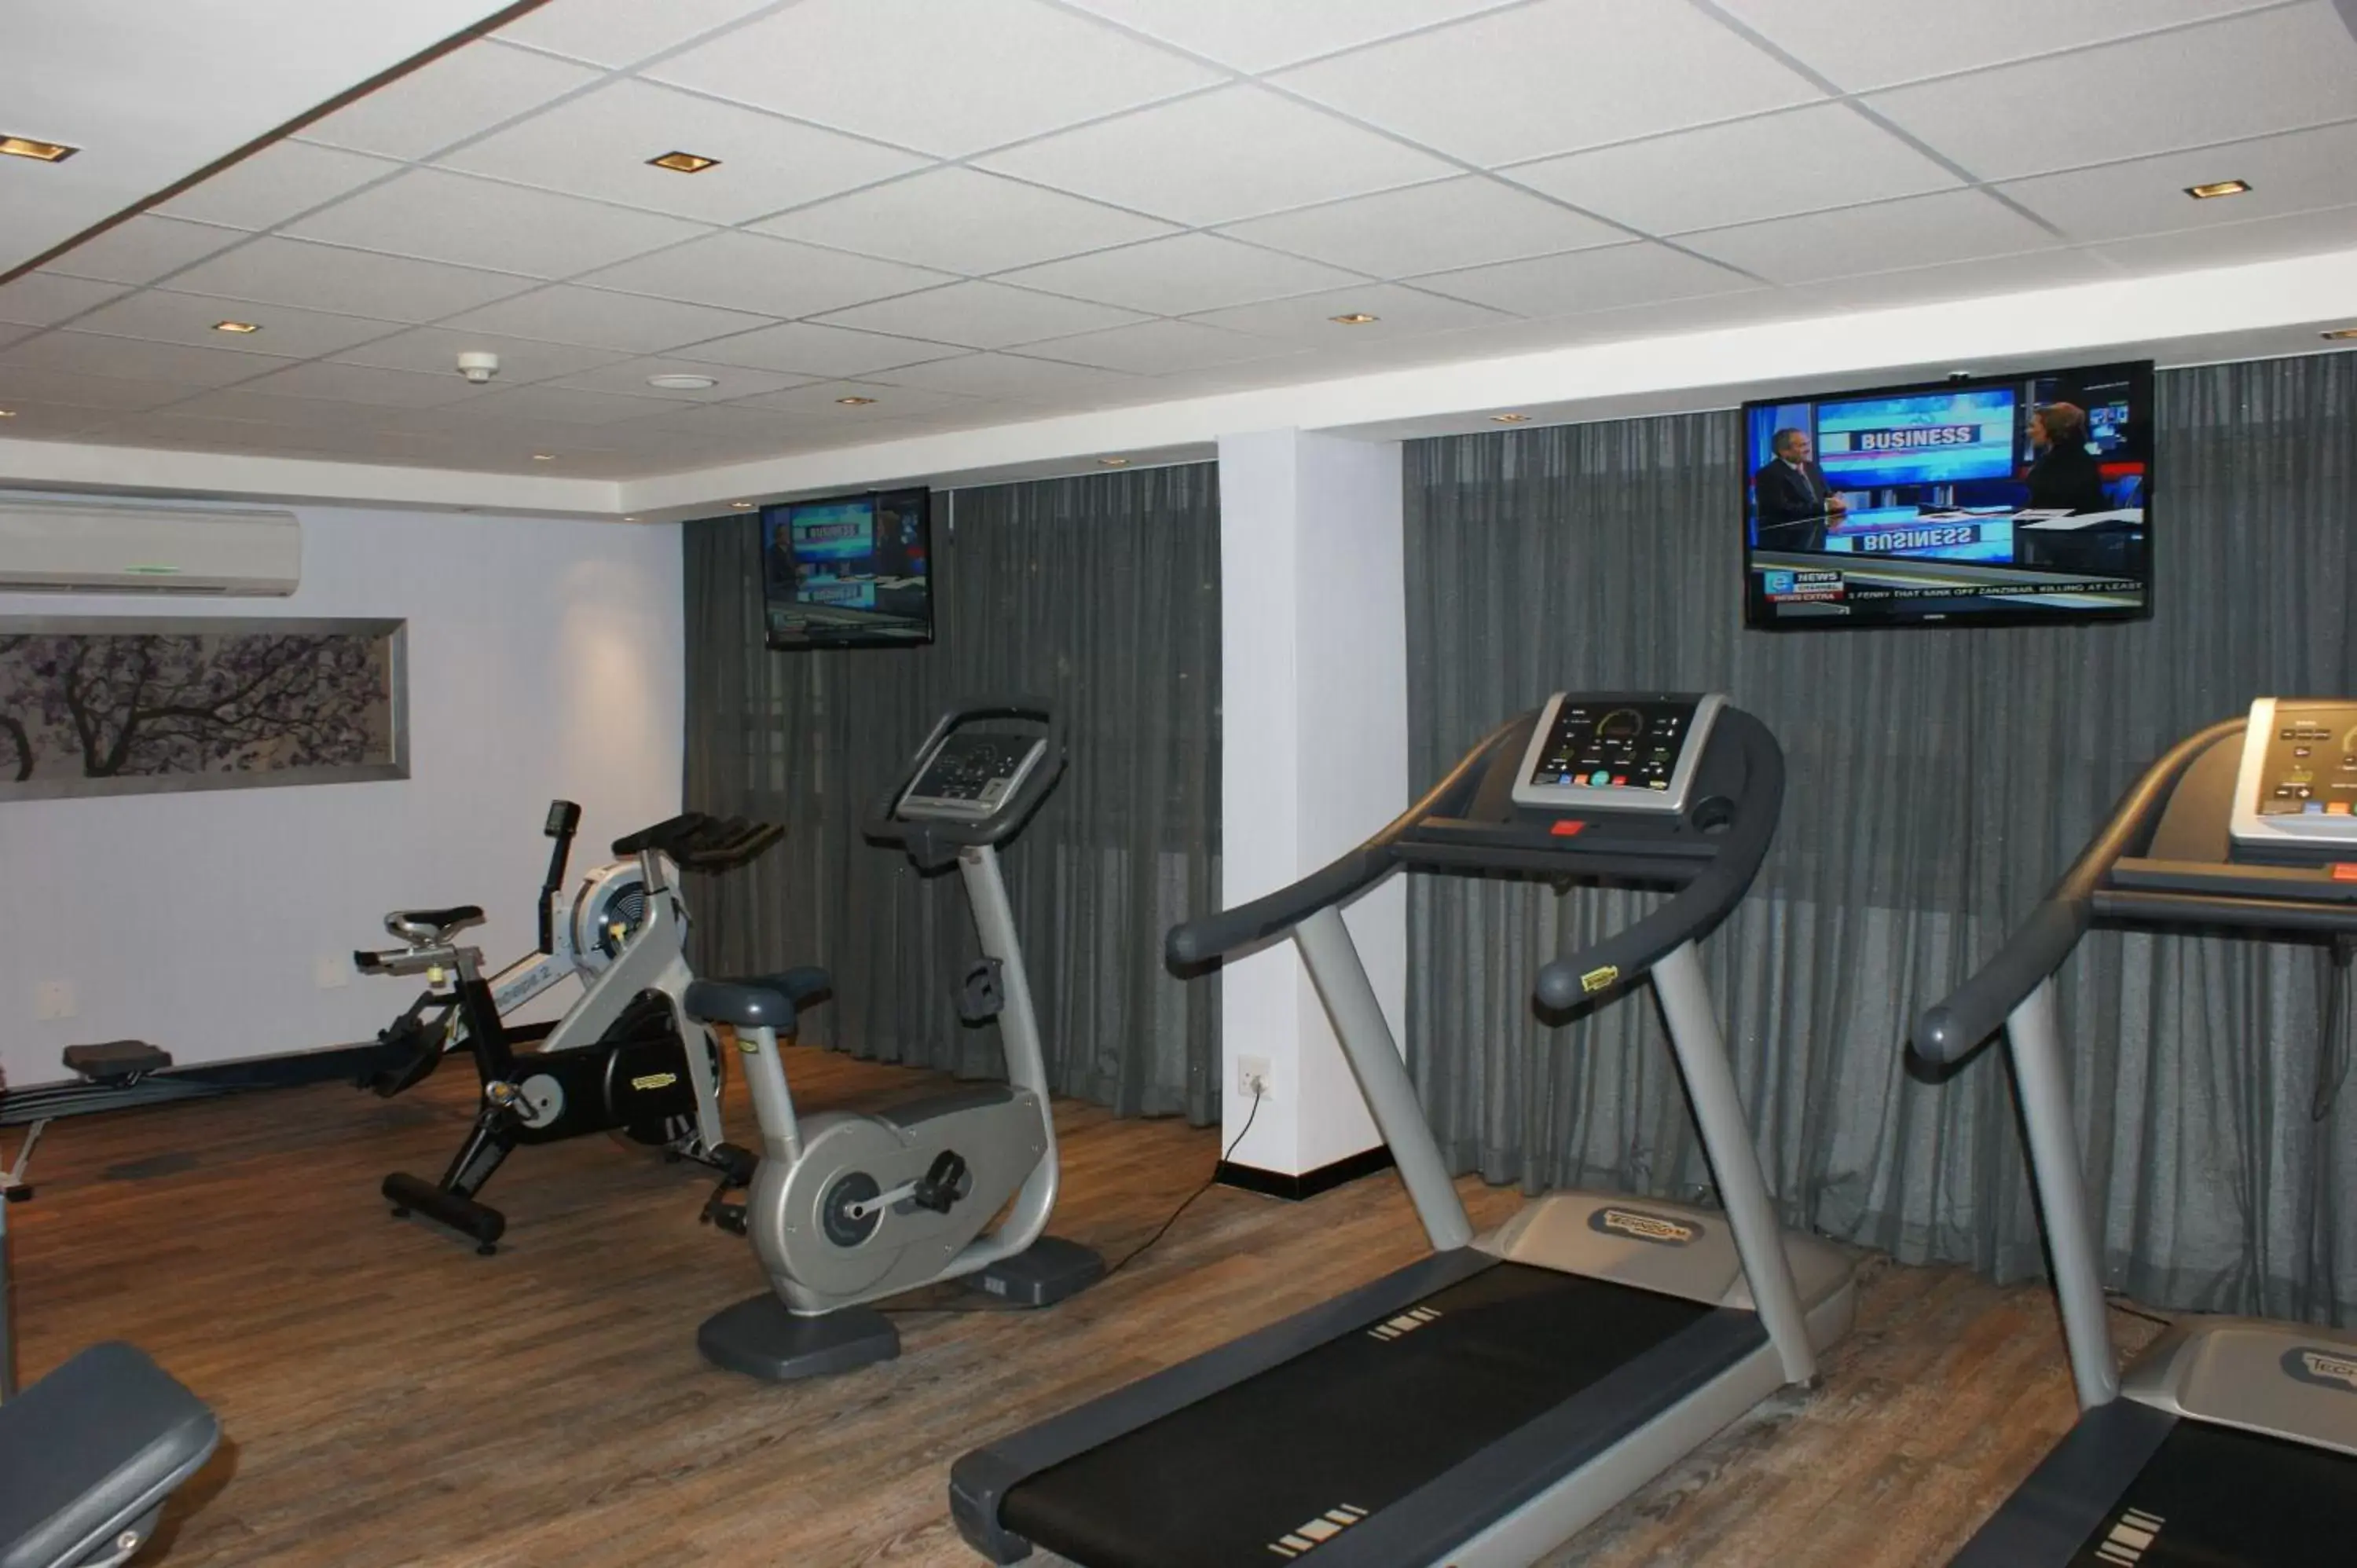 Fitness centre/facilities, Fitness Center/Facilities in Southern Sun Pretoria